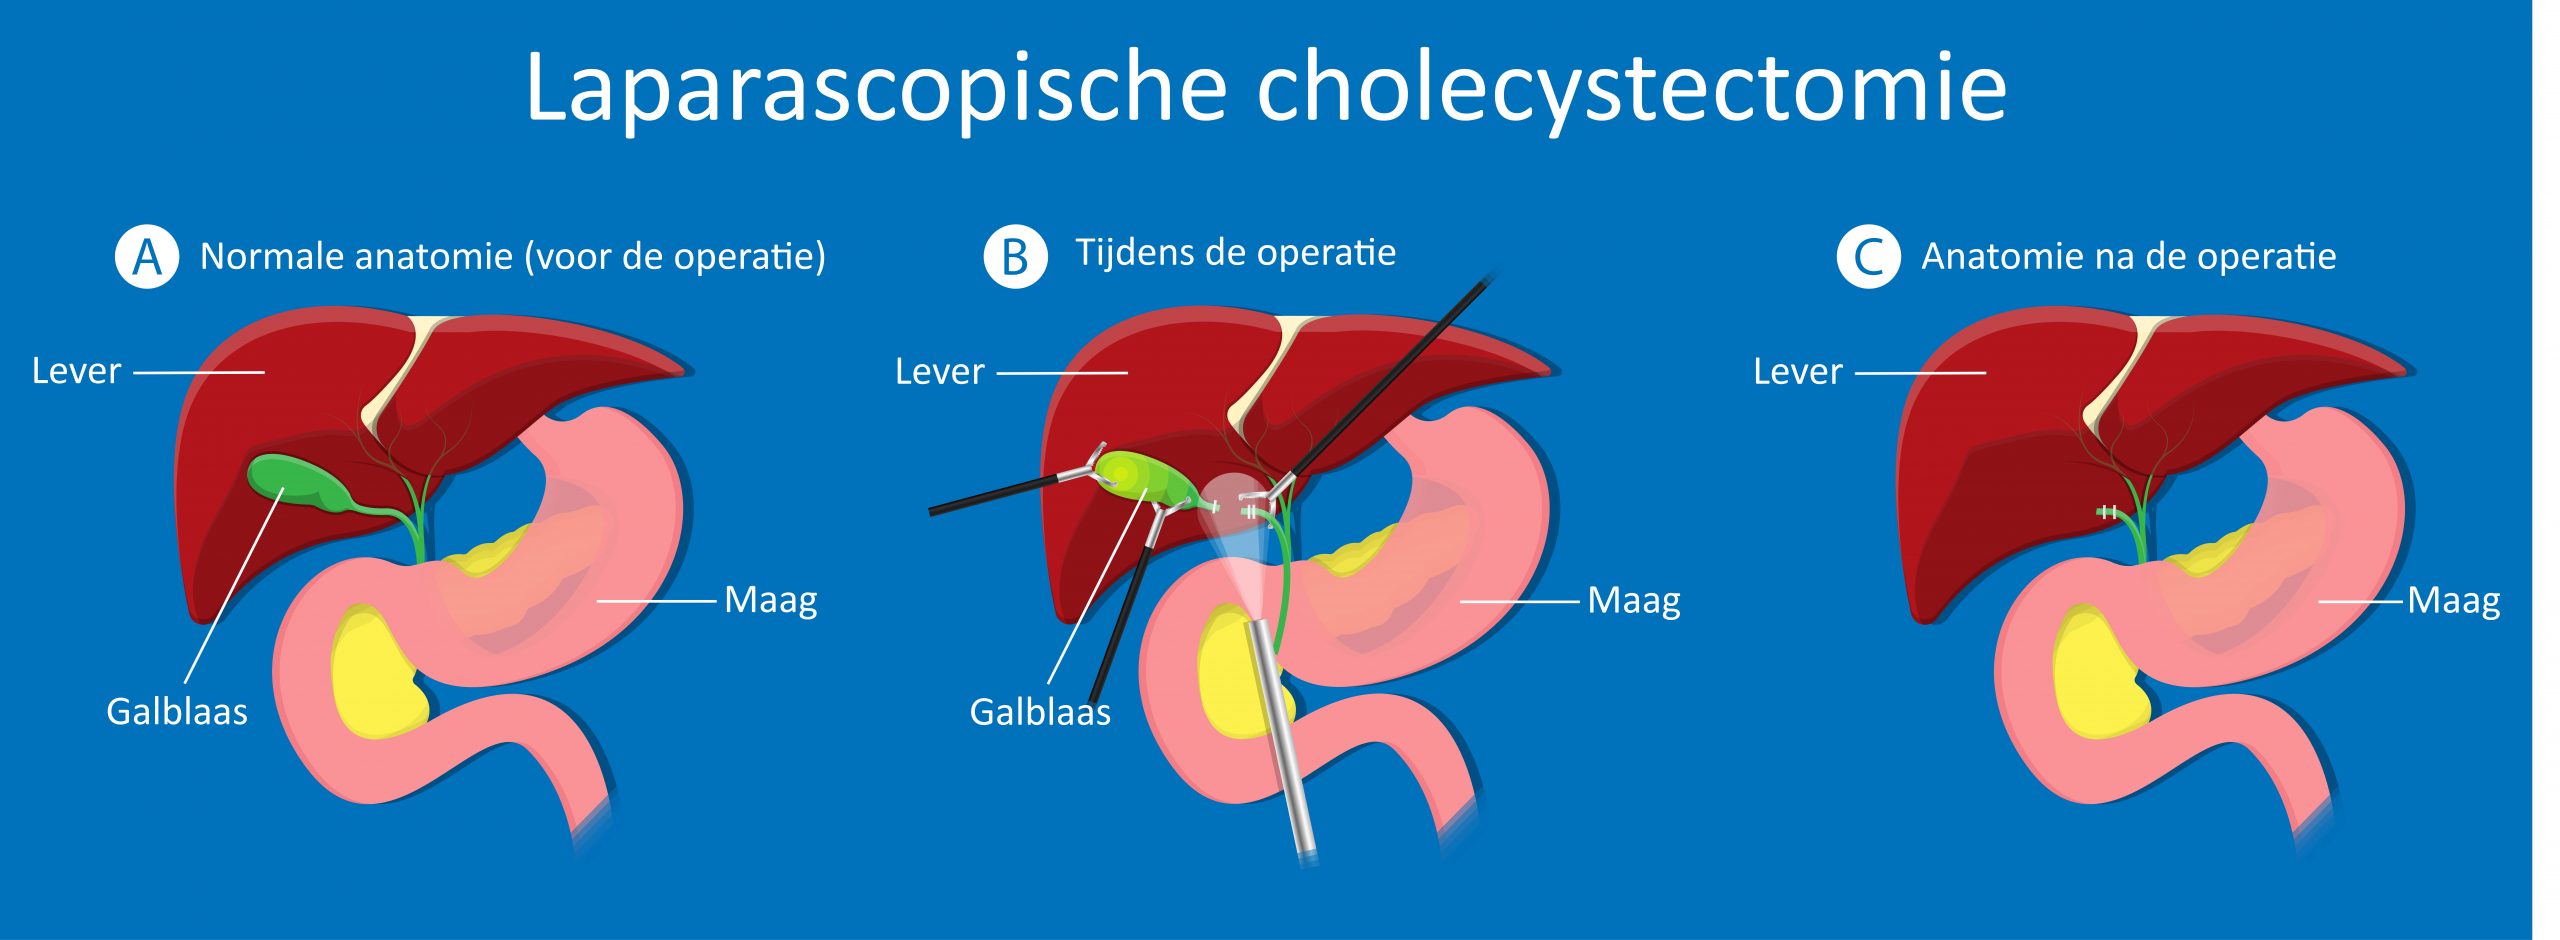 Laparascopische cholecystectomie.jpg